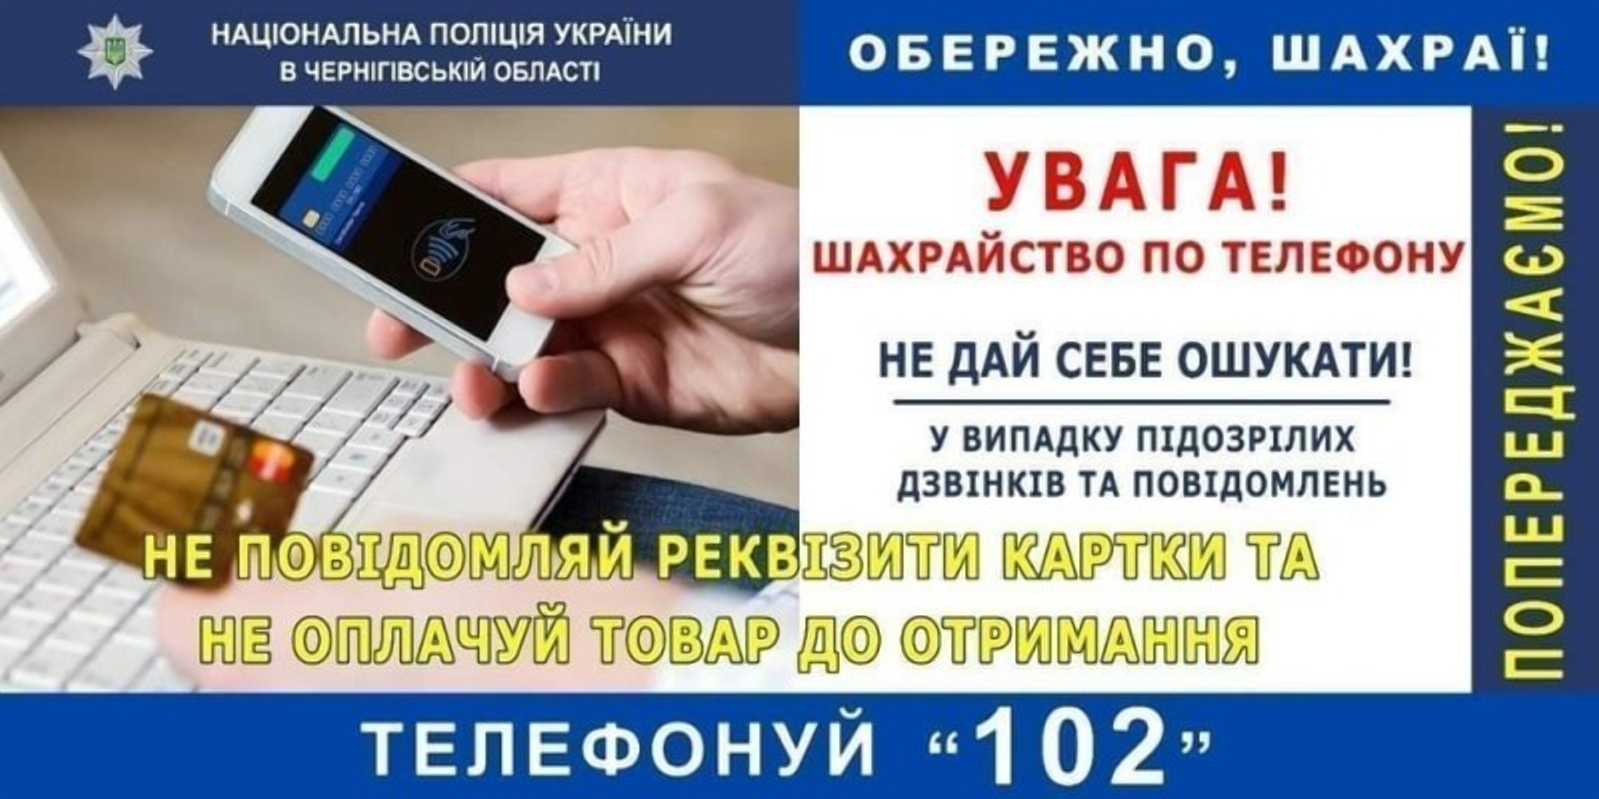 Житель Чернигова потерял 200 тыс. грн, заказав в Сети “евробляху“ 